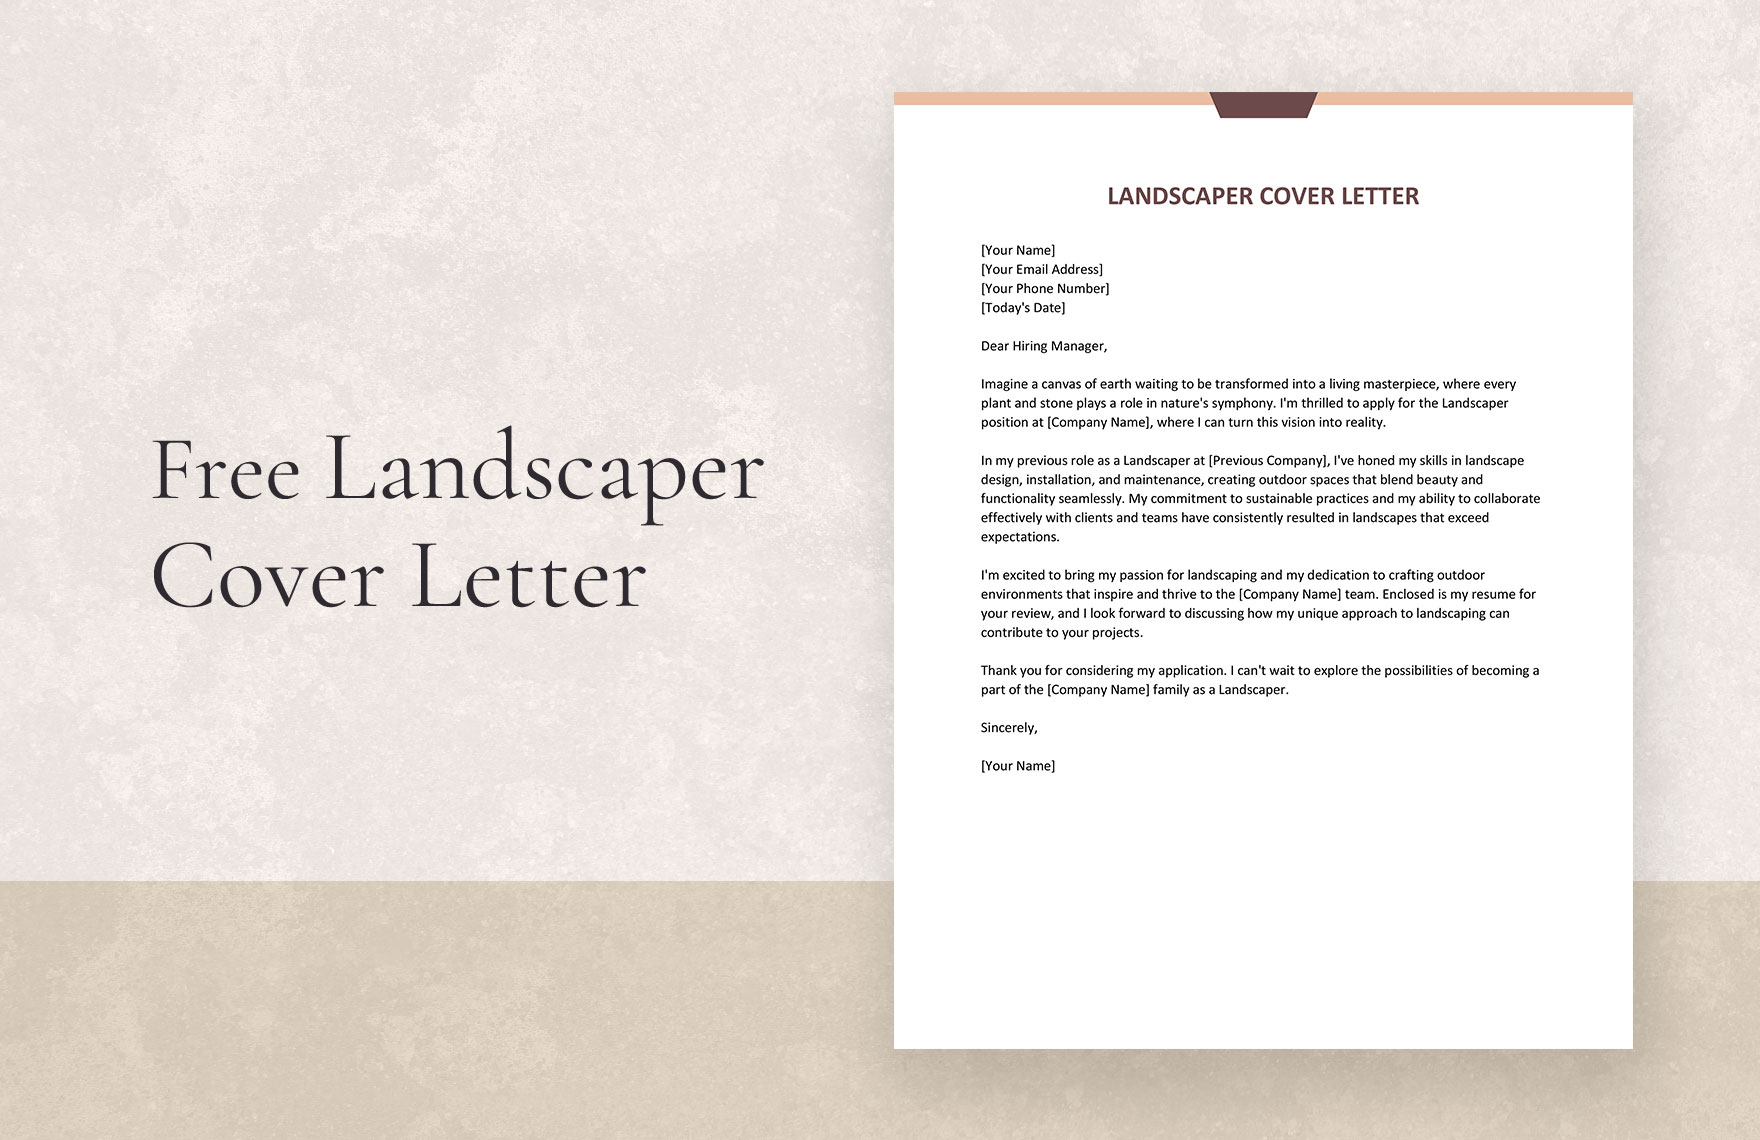 Landscaper Cover Letter in Word, Google Docs